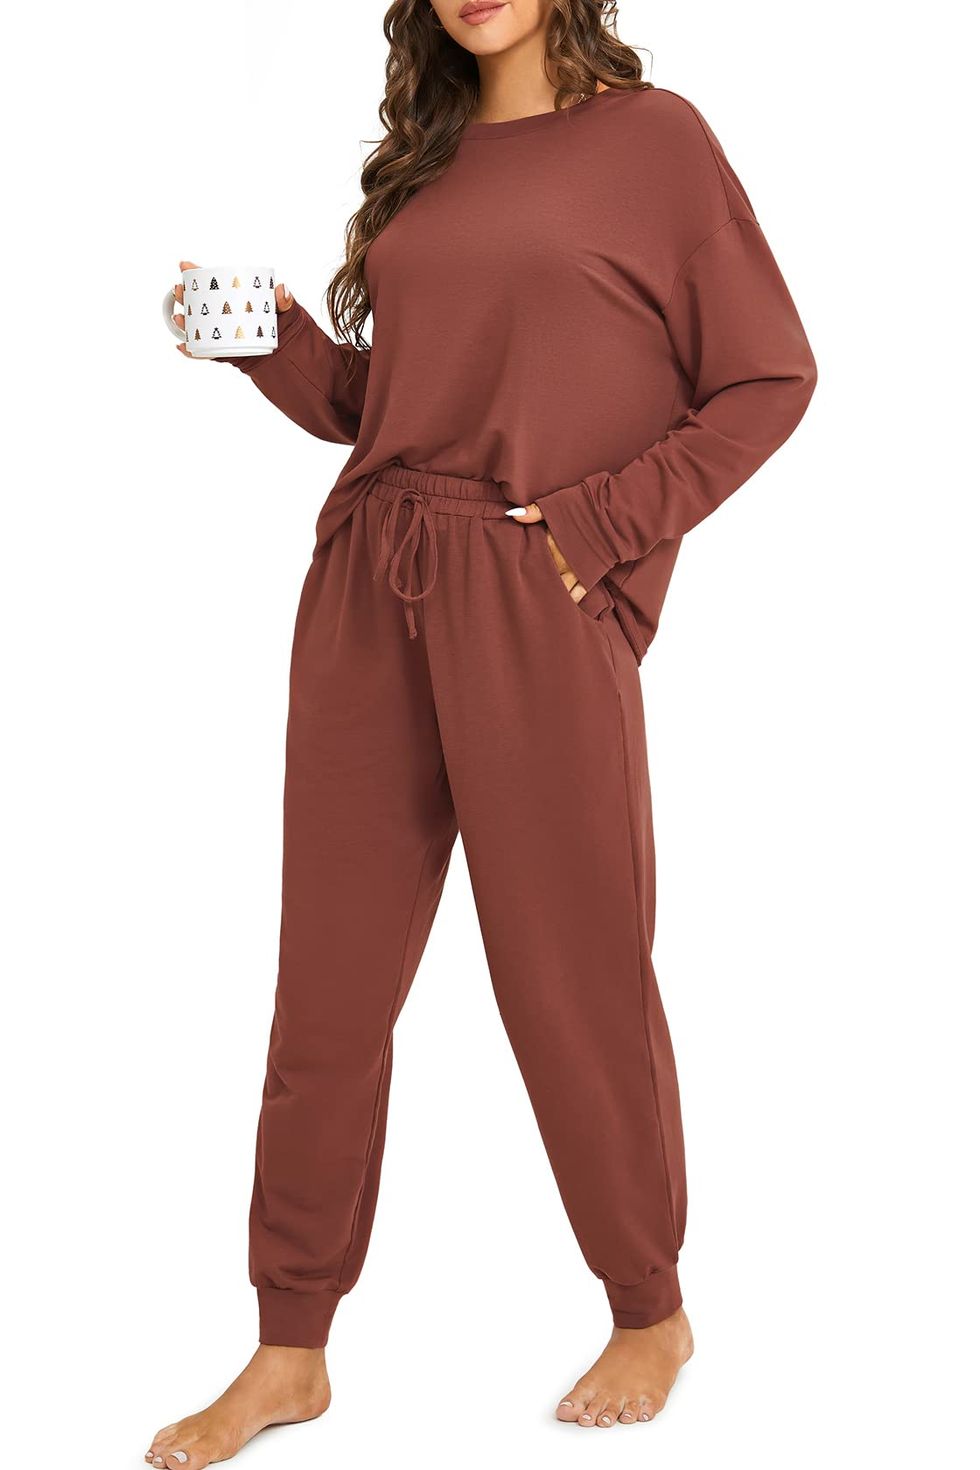 Women's Sleepwear Pajamas Two-piece Set Sexy Nightwear Sling Crop Tops  Loose Shorts Casual Fitting Solid Loungewear For Women Pjs